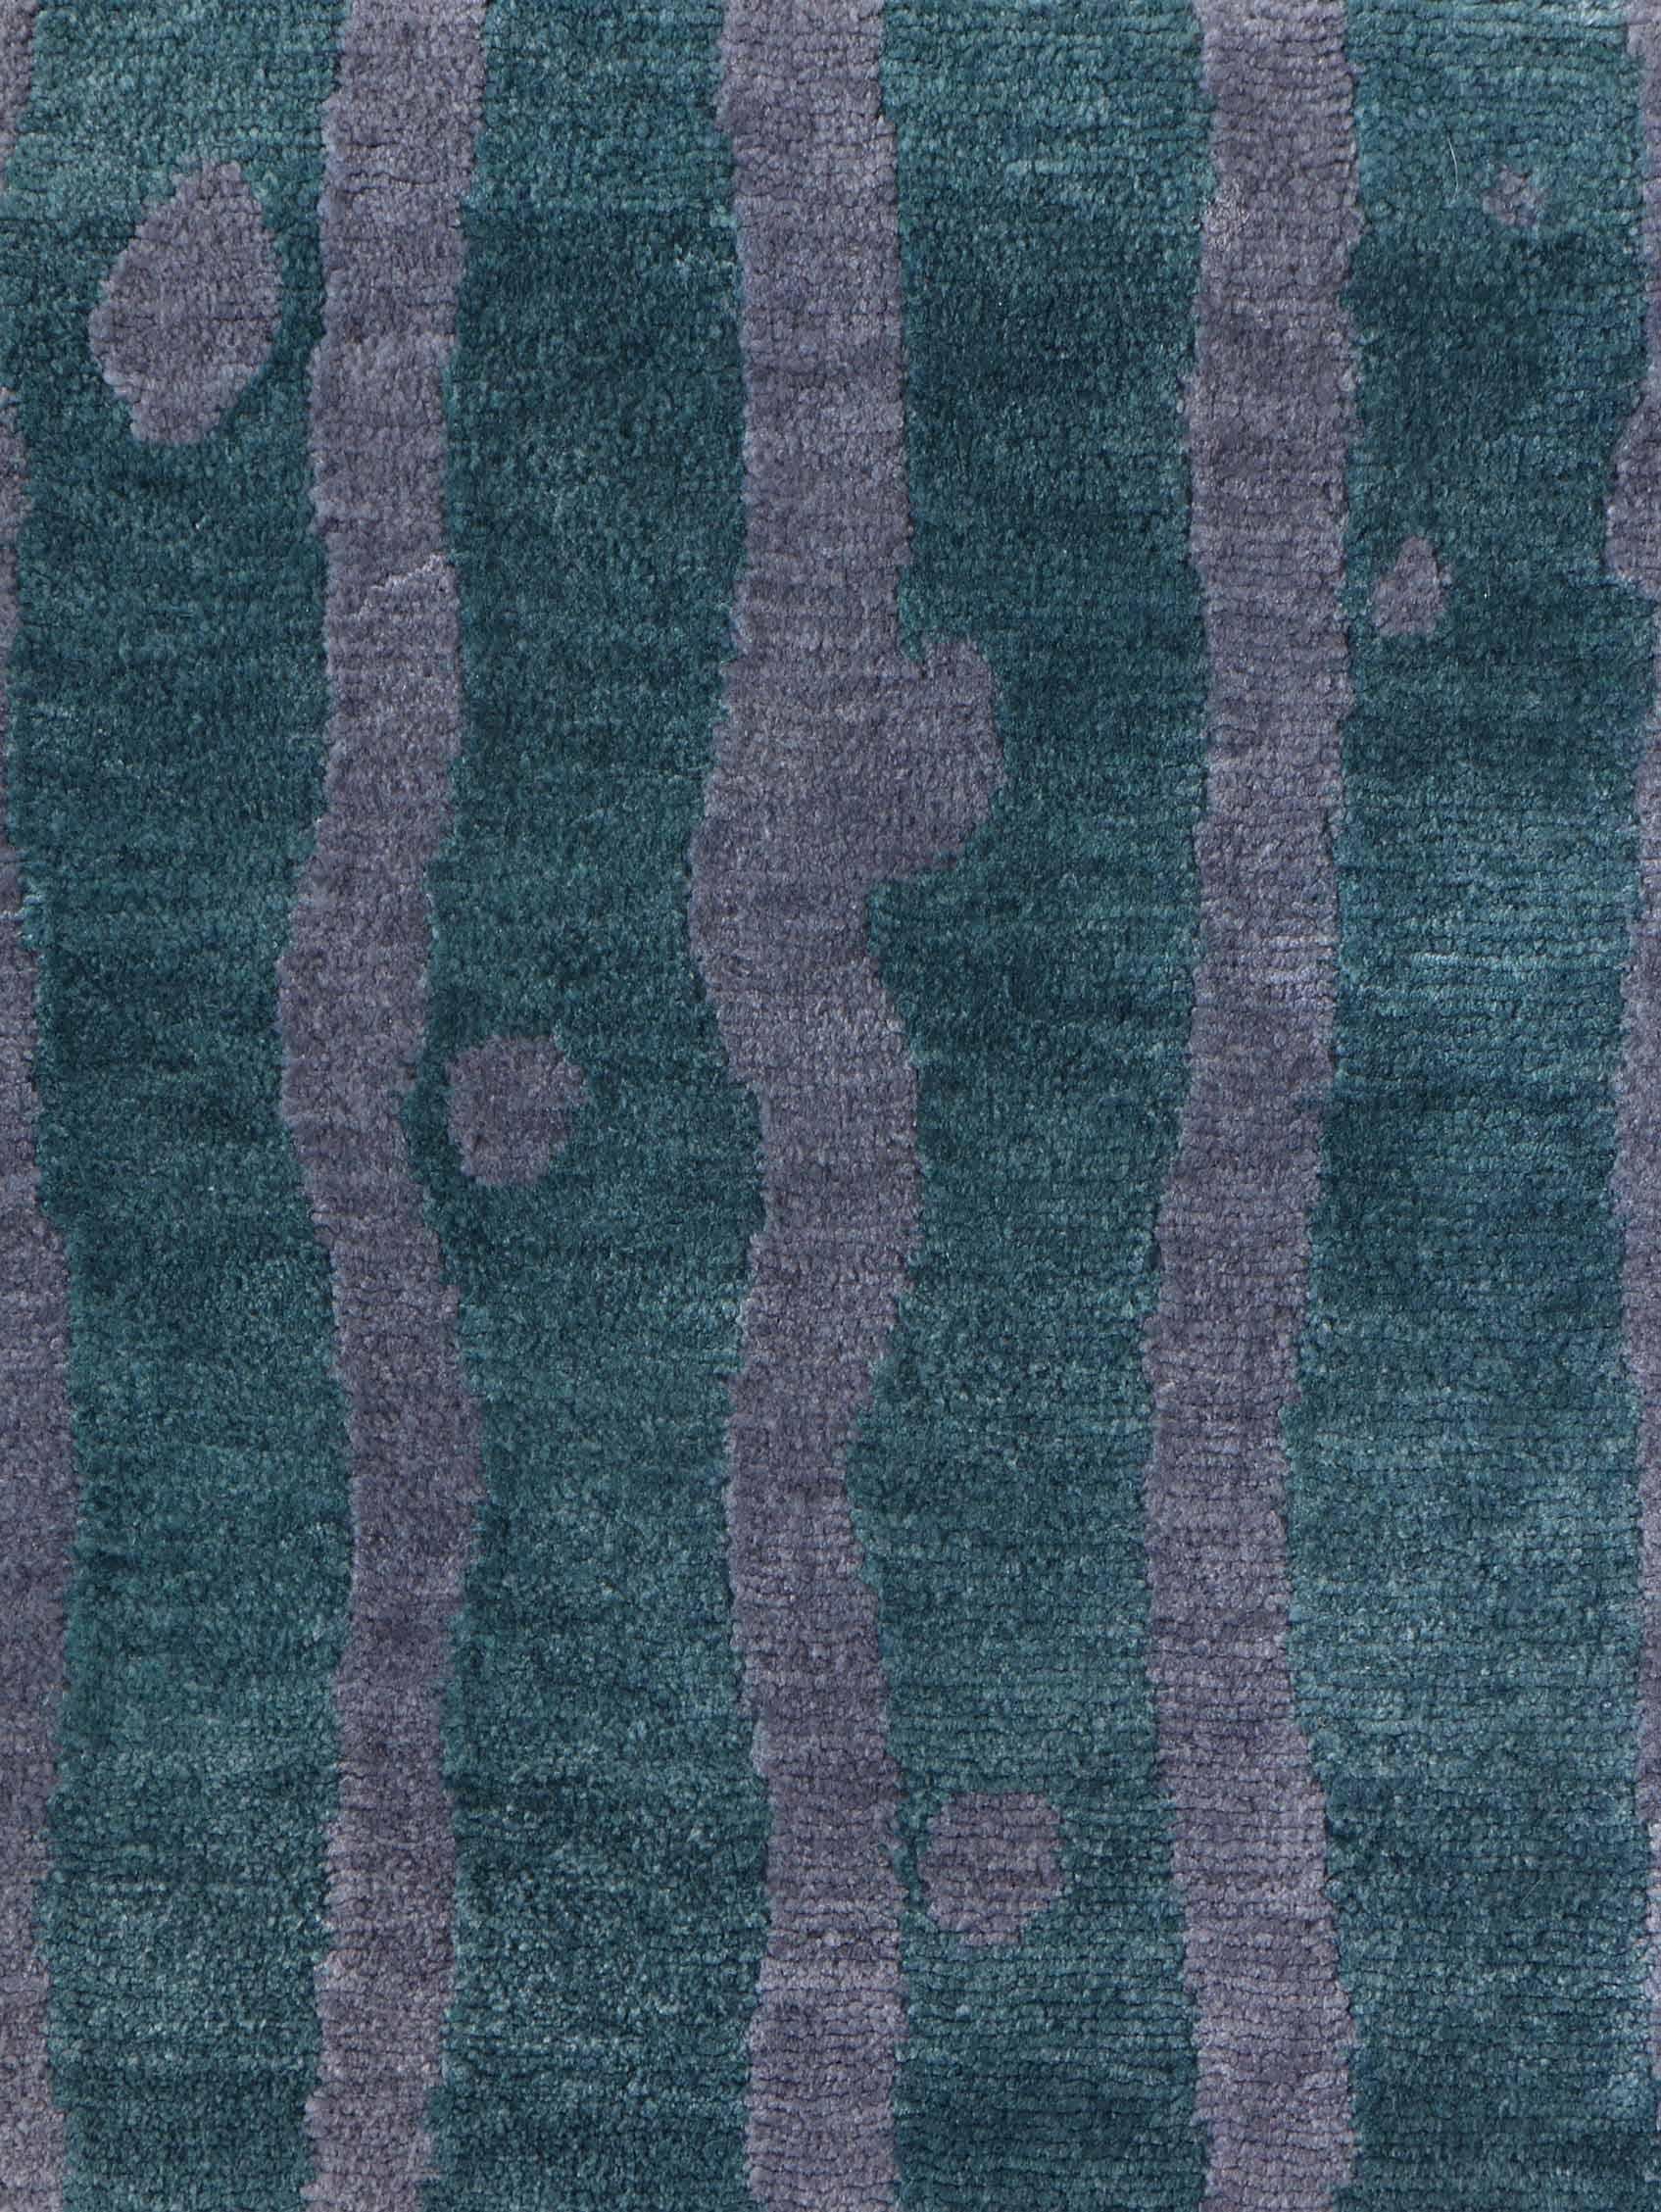 Motif du tapis : Drippy Stripe - Golfe
MATERIAL : 100% laine mérinos
Qualité : Tissage croisé tibétain, tissé à la main 
Taille : 8'-0